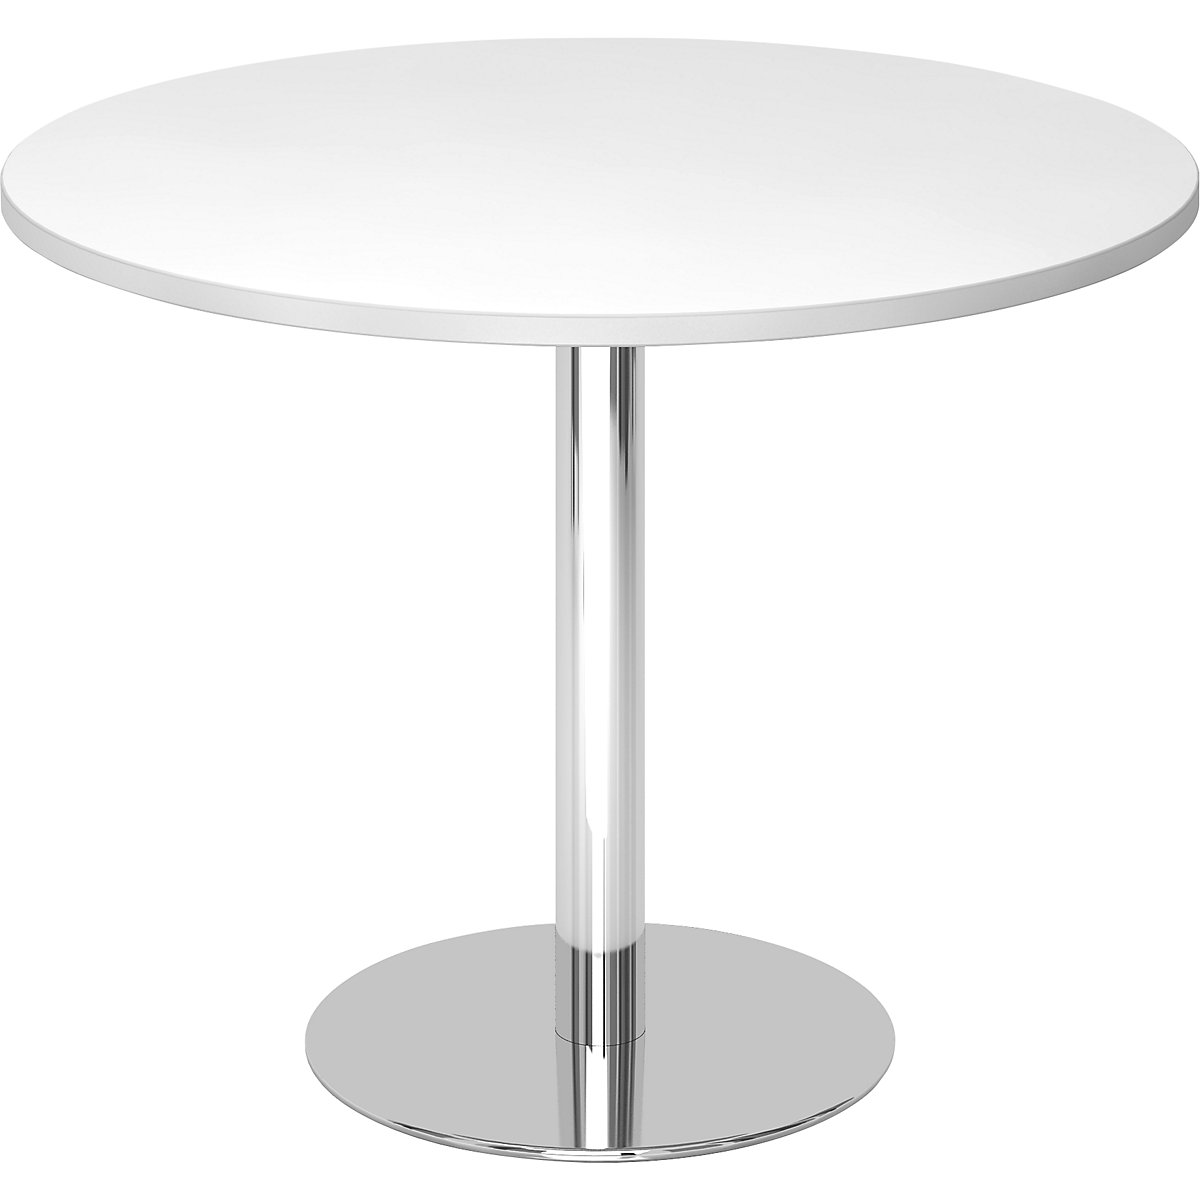 Jednací stůl, Ø 1000 mm, výška 755 mm, pochromovaný podstavec, deska bílá